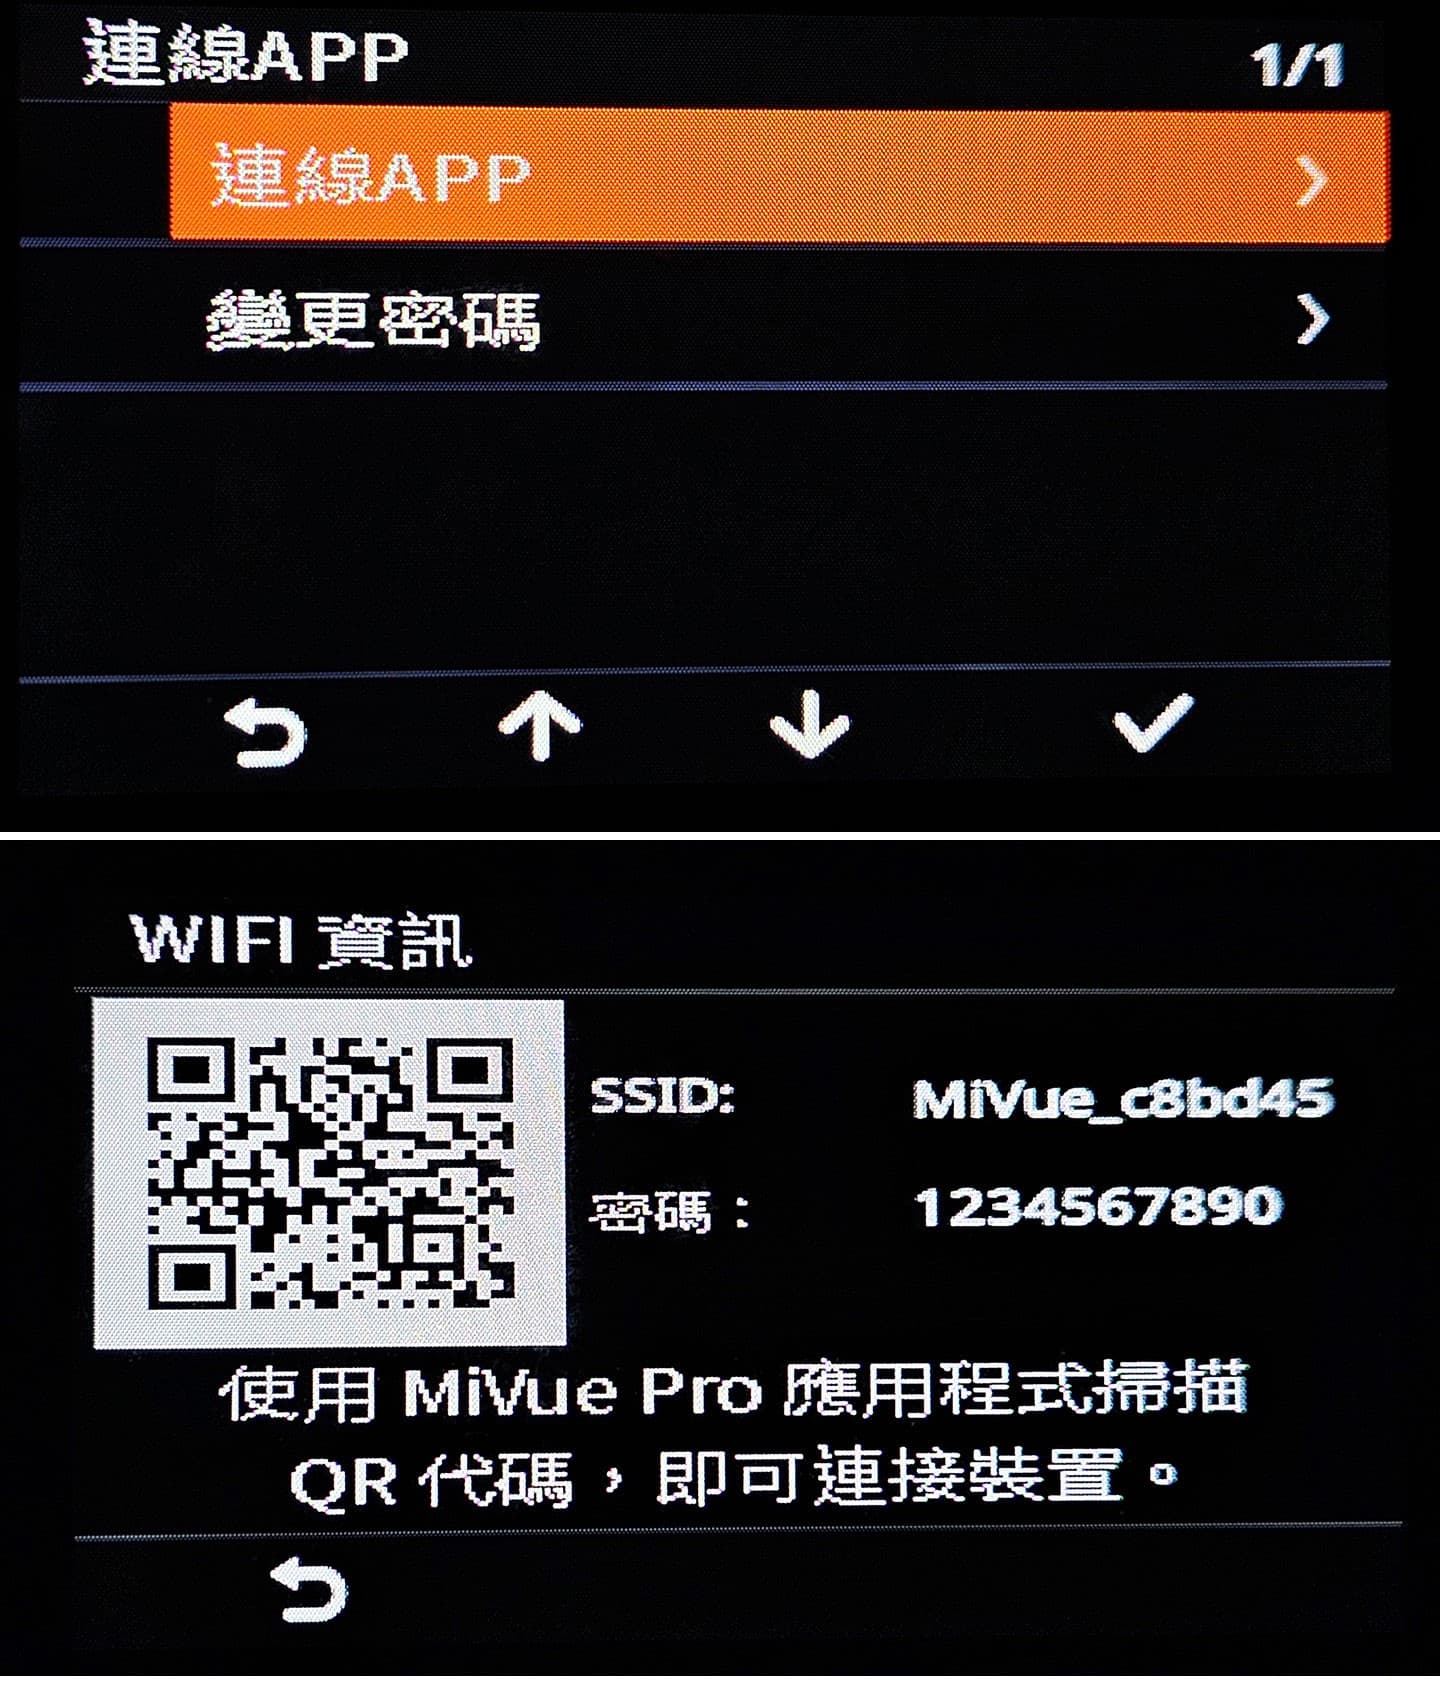 透過主機選單可選擇「連線 APP」，這時畫面會直接秀出 QRCode 提供手機端開啟 MiVue Pro 掃描來完成連線。